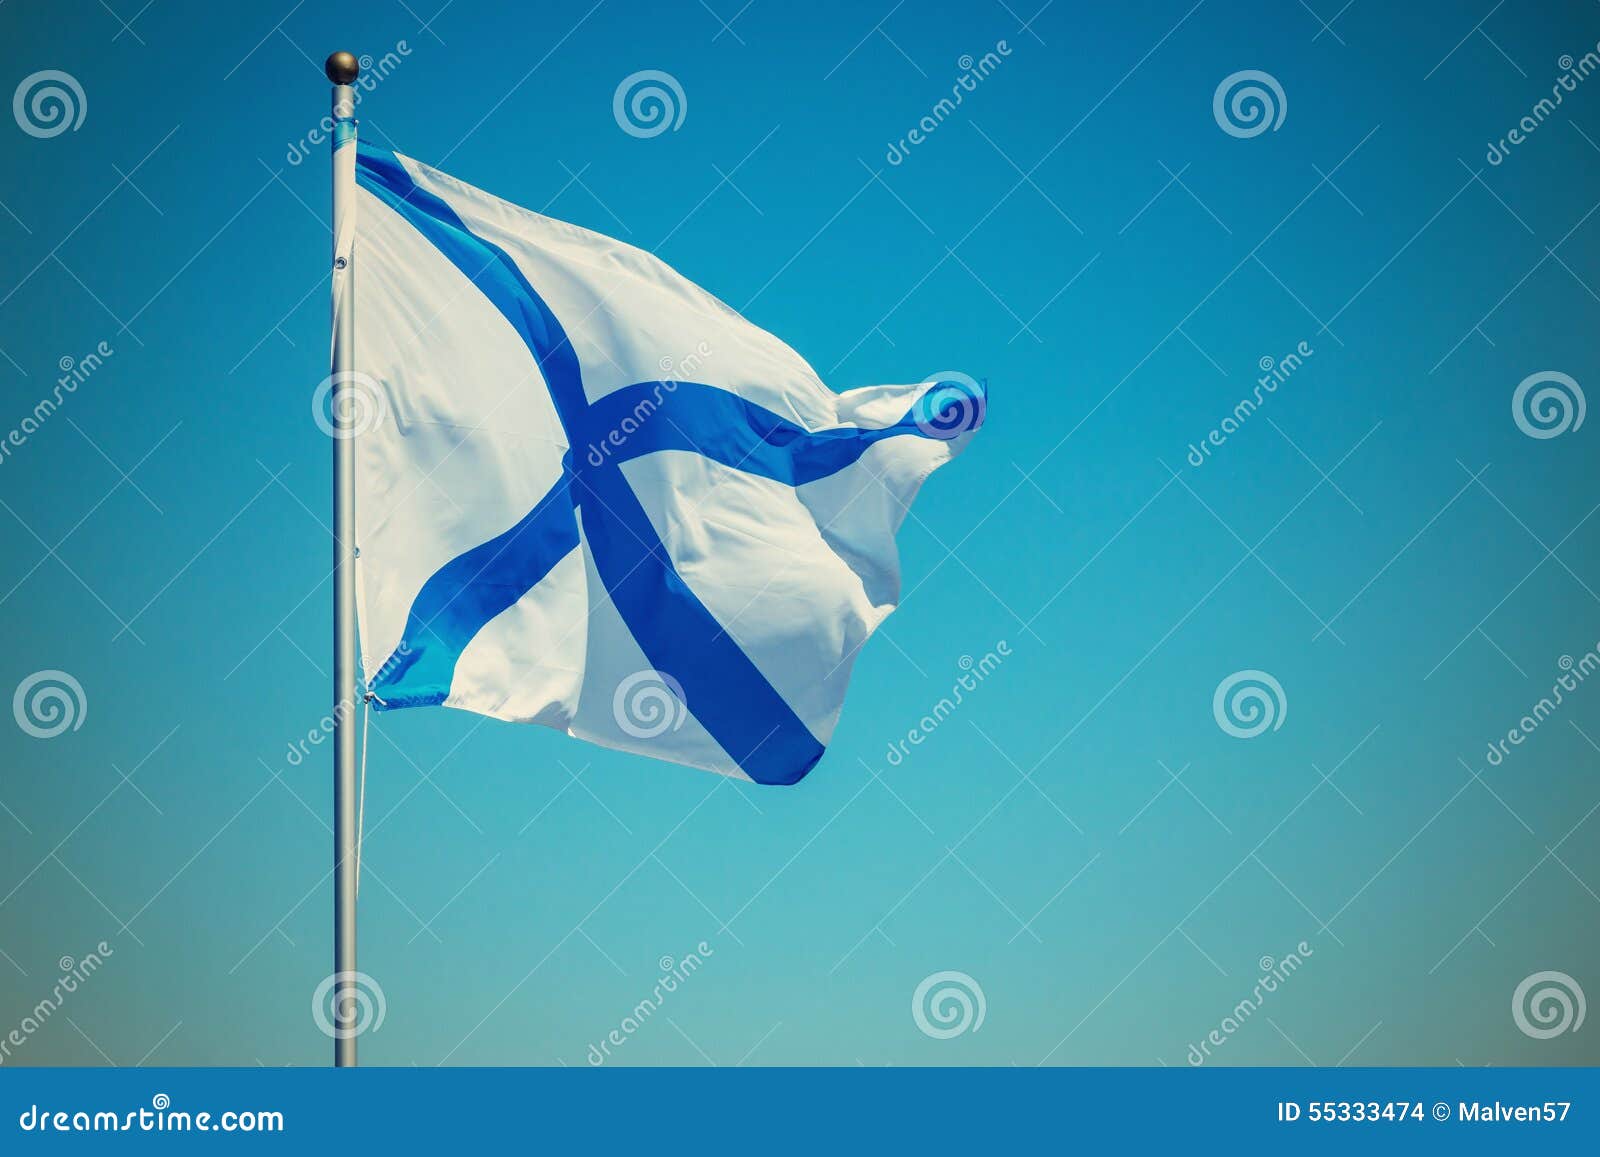 Weisse Flagge Mit Blauem Kreuz Fliegt Auf Einen Fahnenmast Stockfoto Bild Von Weisse Blauem